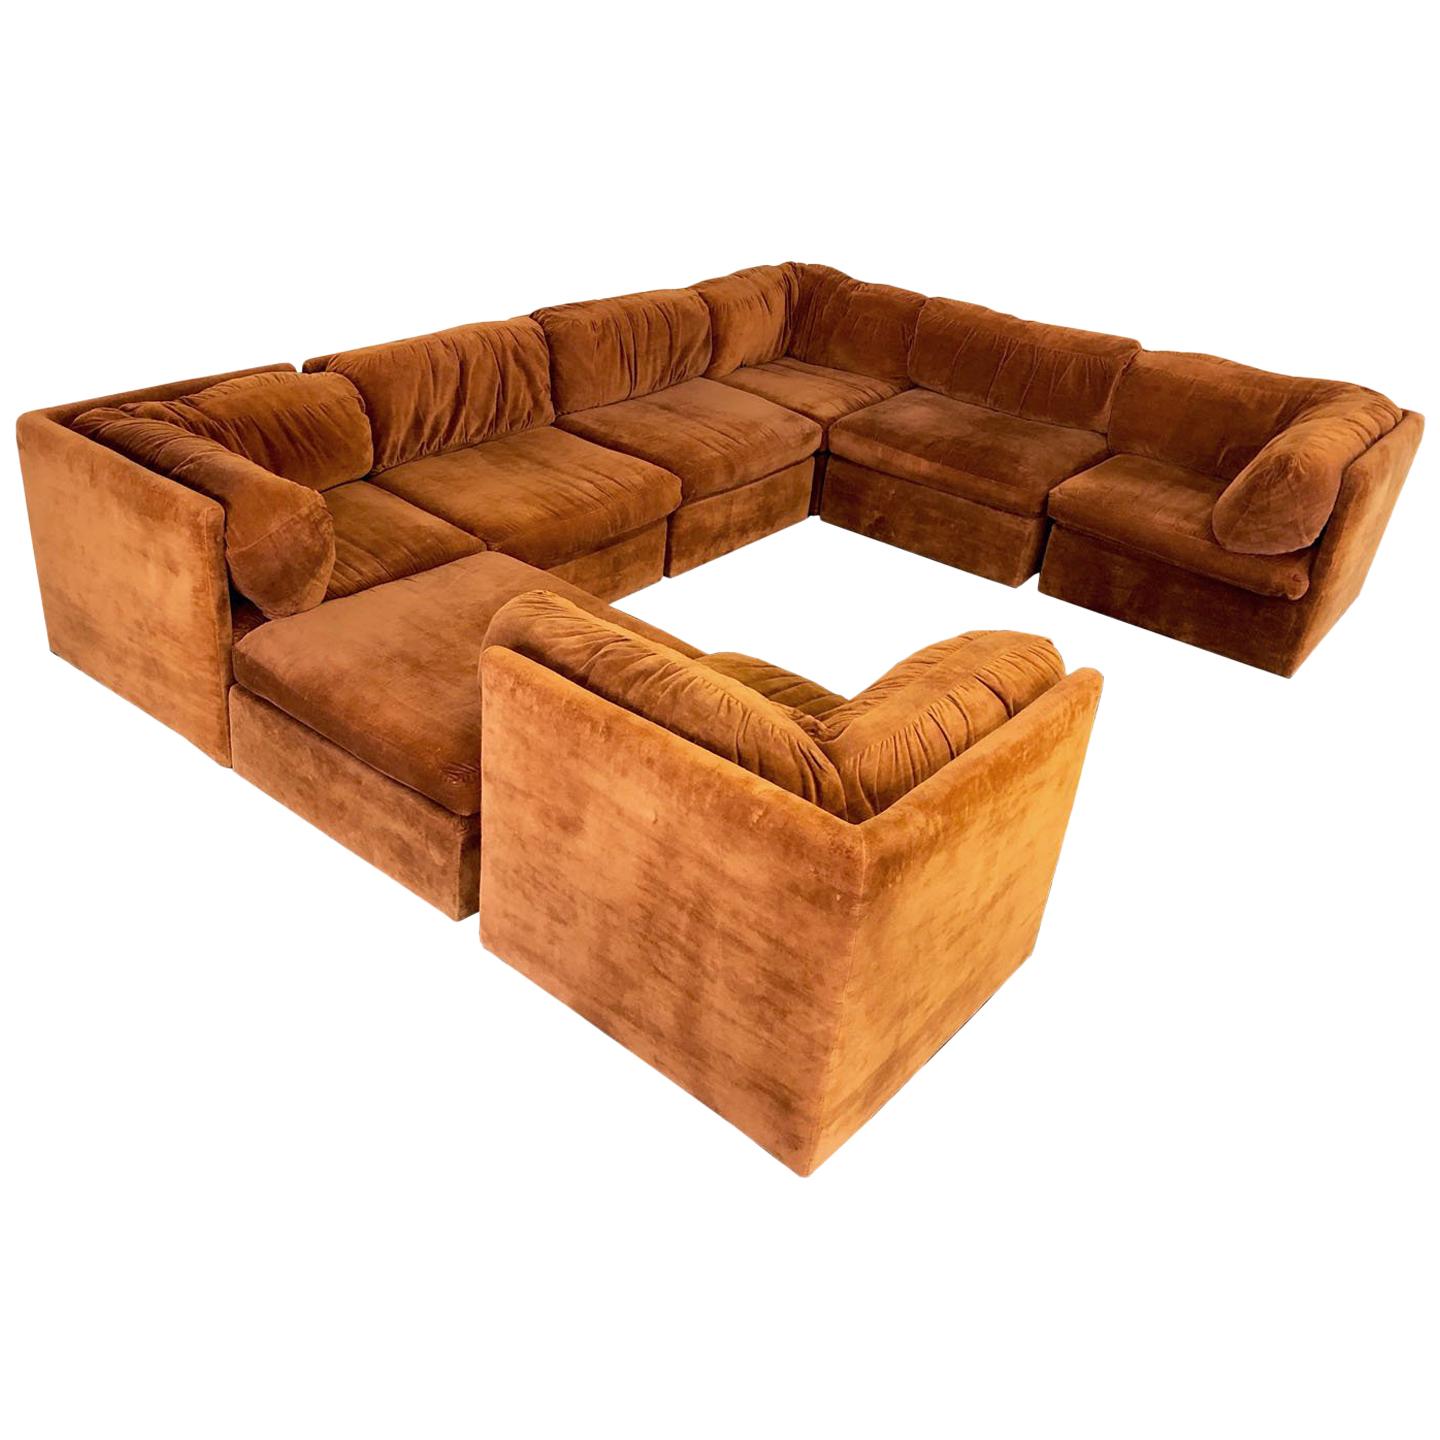 Eight-Piece Modular Sofa by Milo Baughman for Thayer Coggin